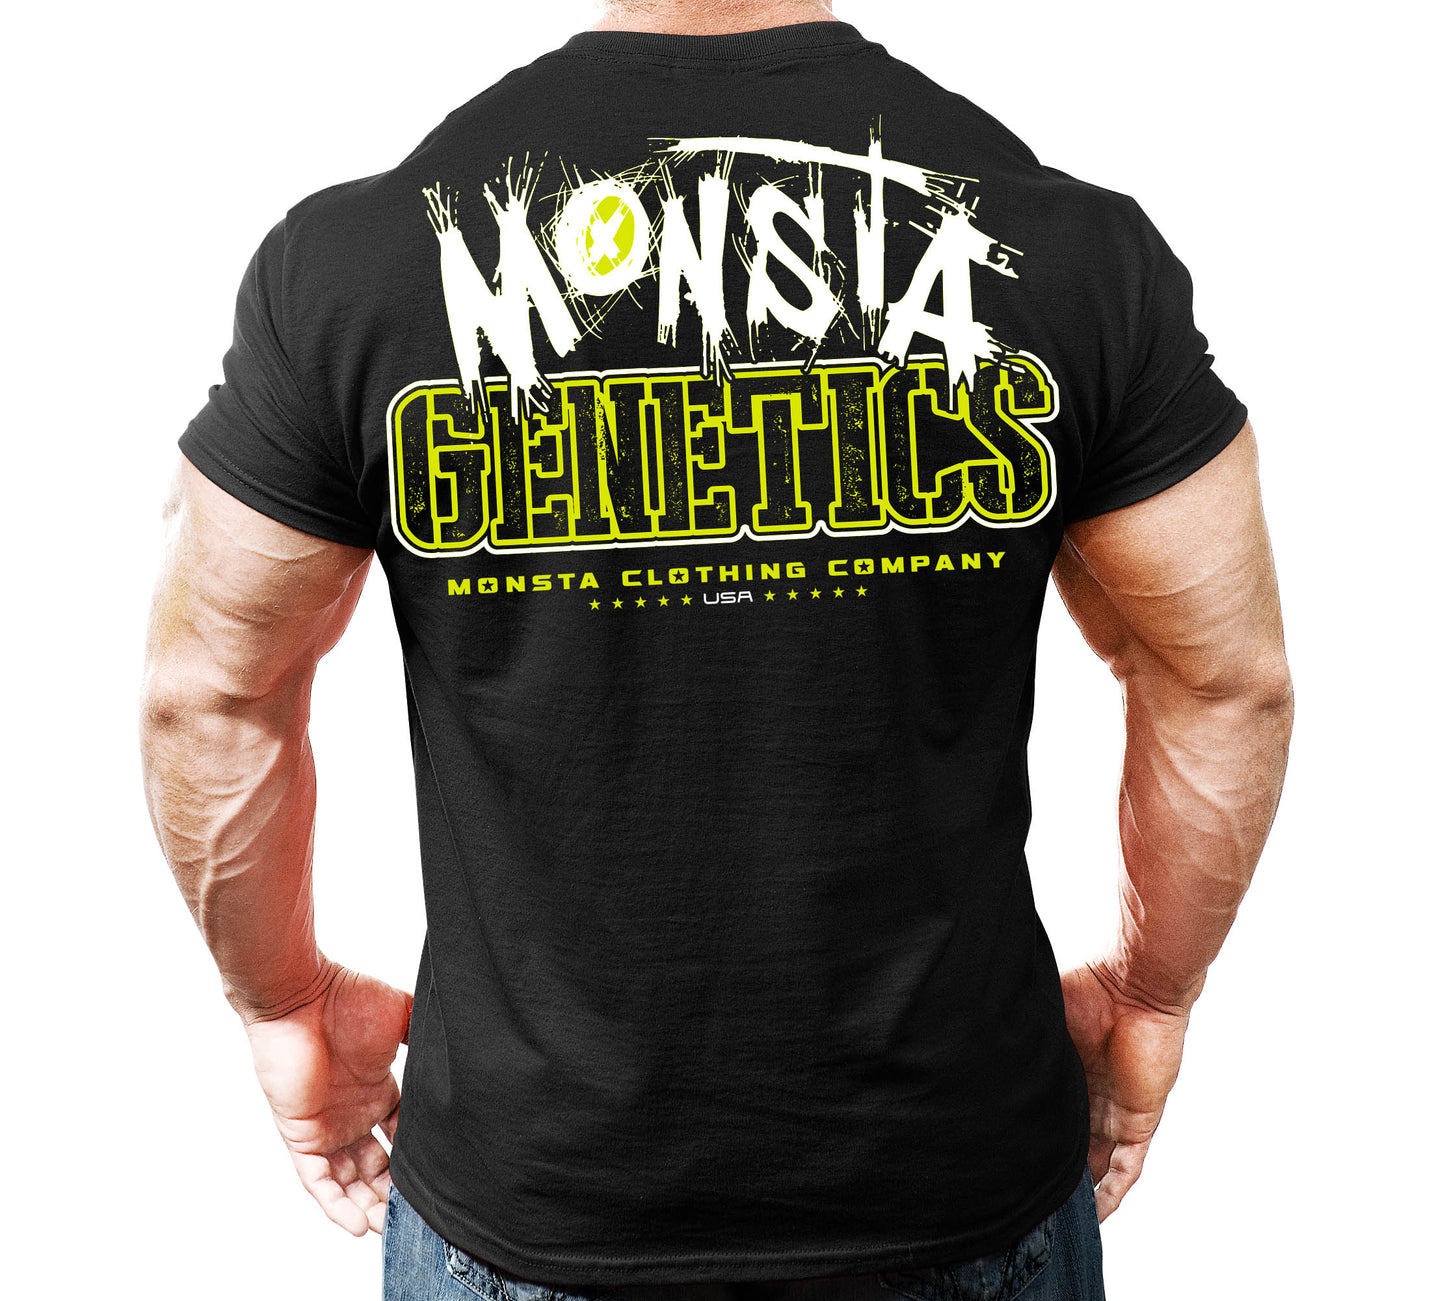 Monsta Genetics-139: WT-safetyYW